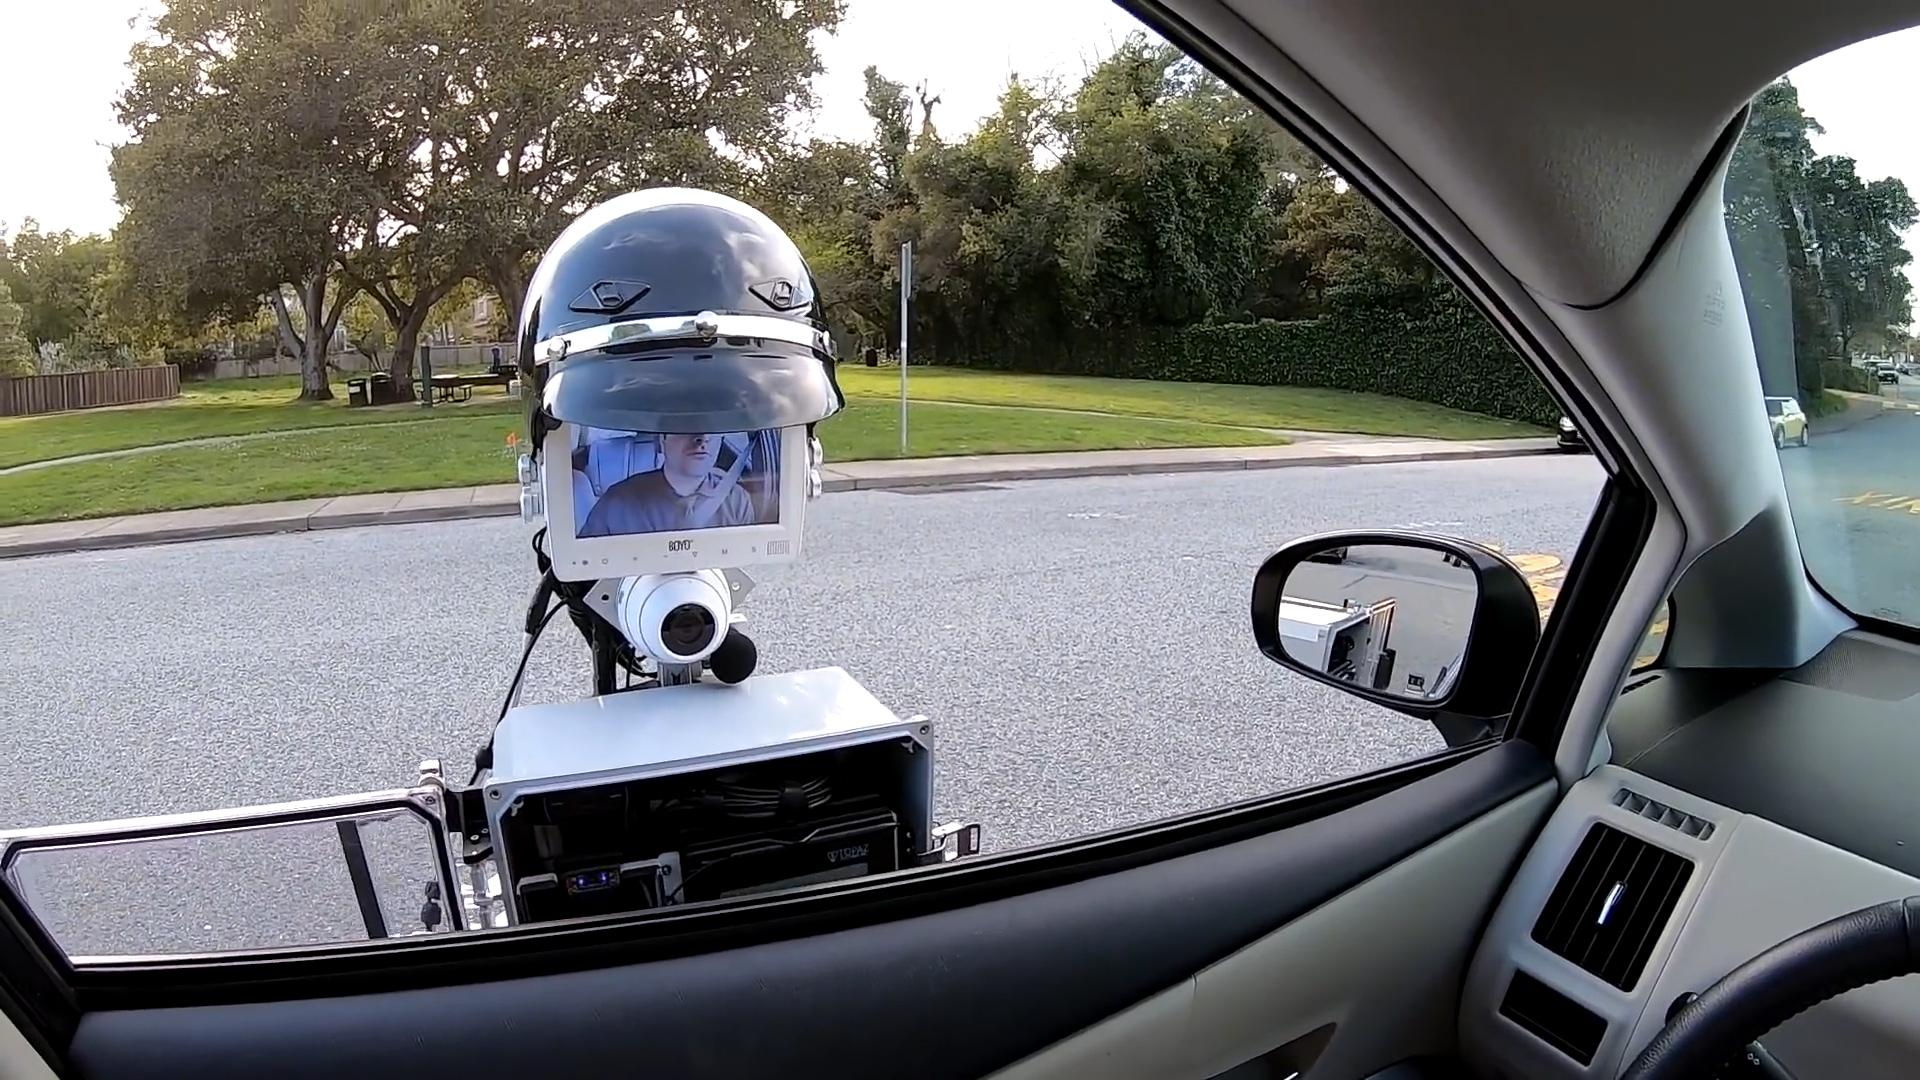 "بالفيديو" شاهد الروبوت الشرطي أثناء إصداره مخالفة مرورية 3